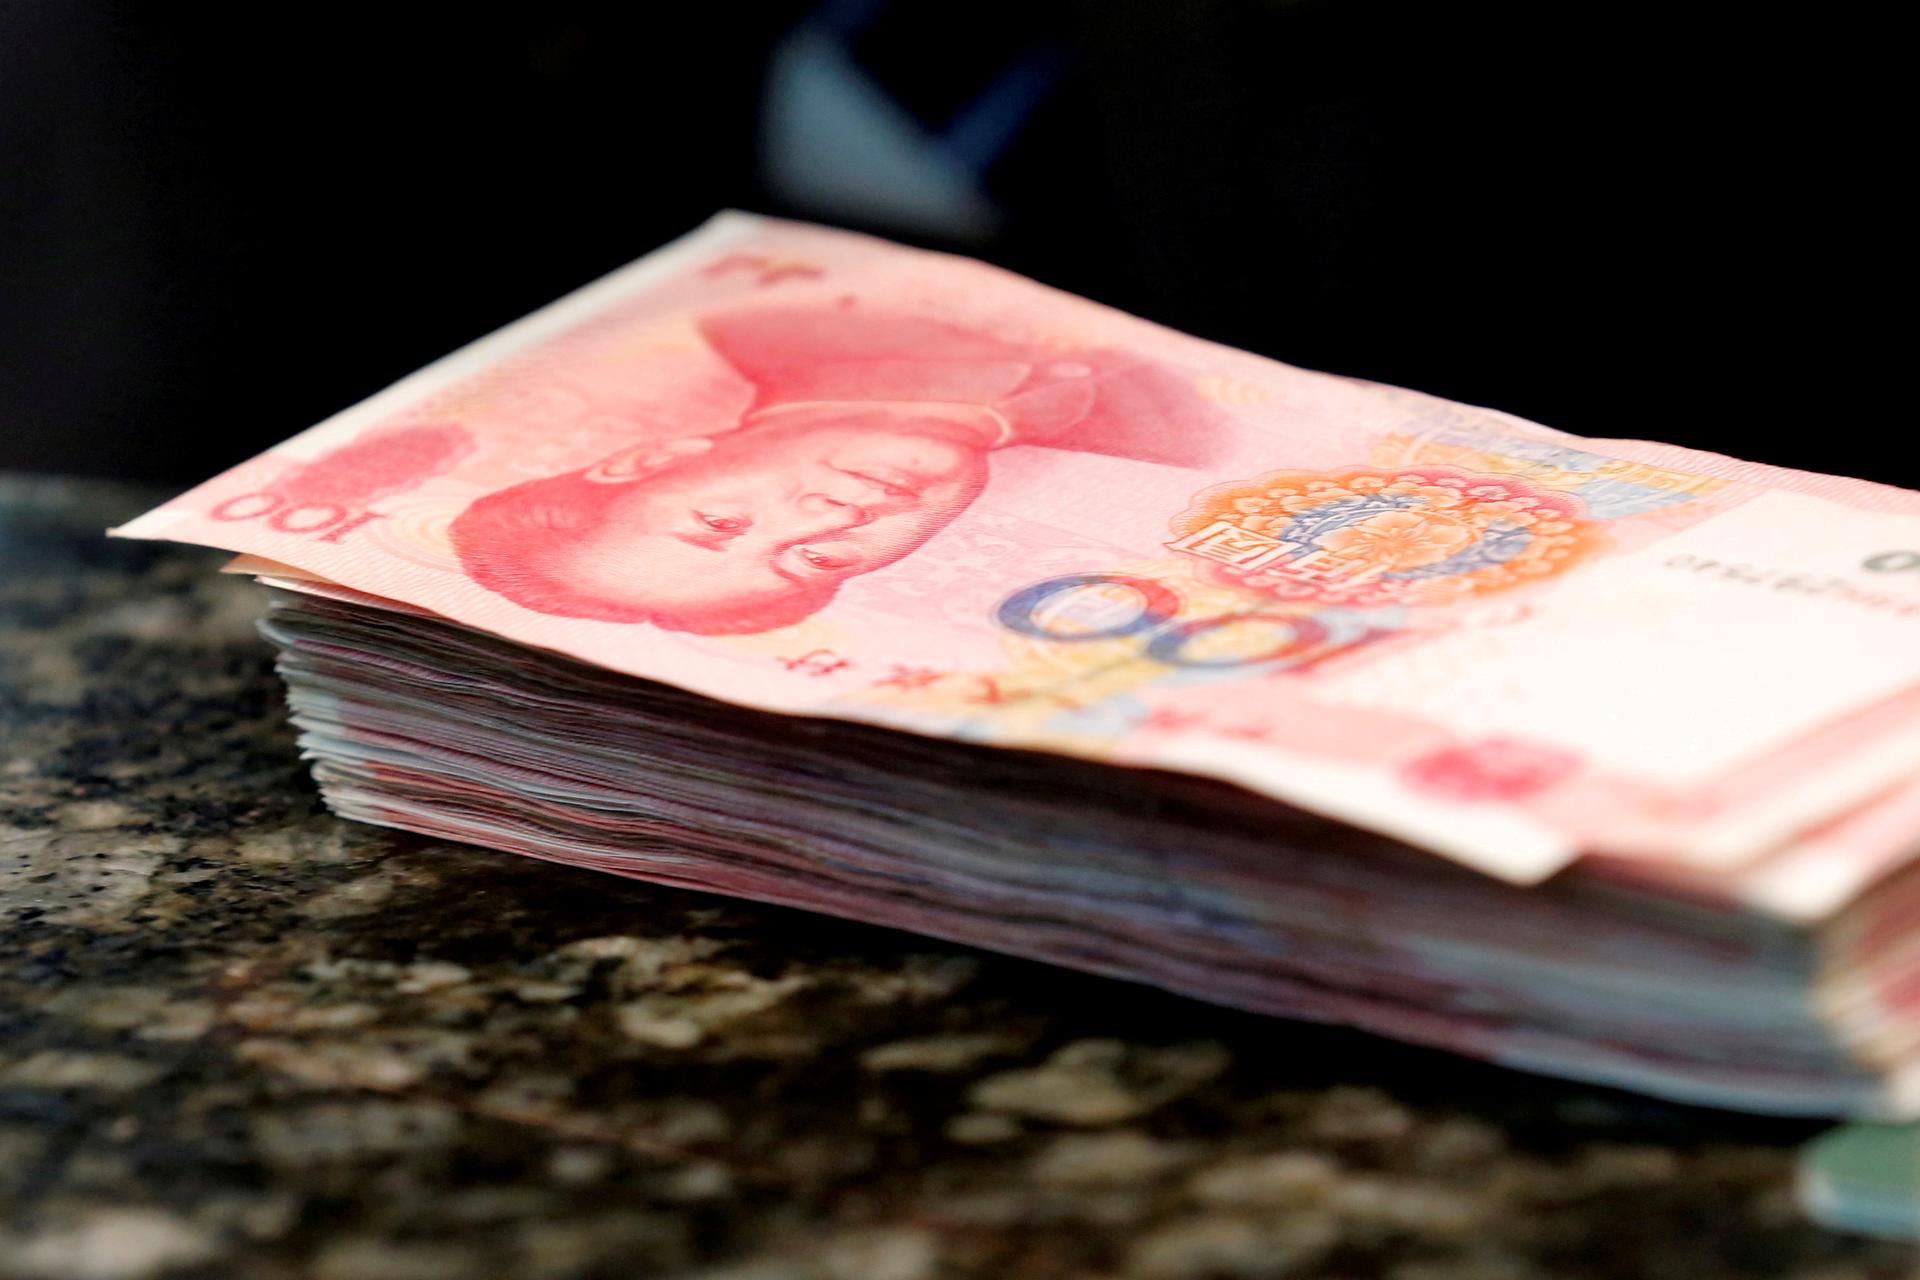 Chinese 100 Yuan banknotes